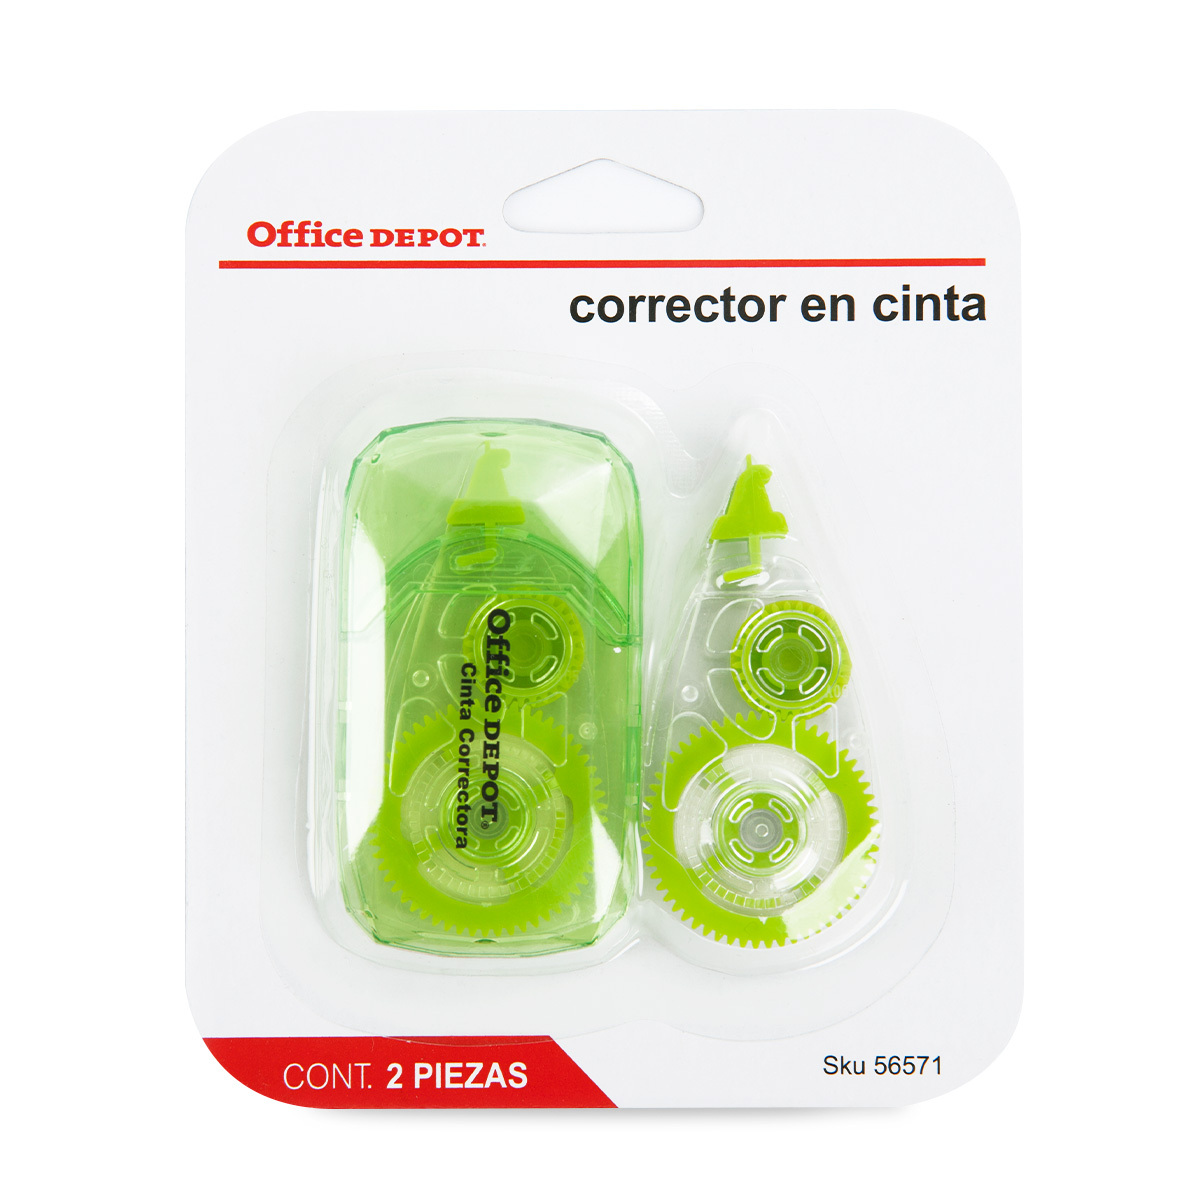 CINTA CORRECTORA C REPUESTO OFFICE DEPOT | Office Depot Mexico